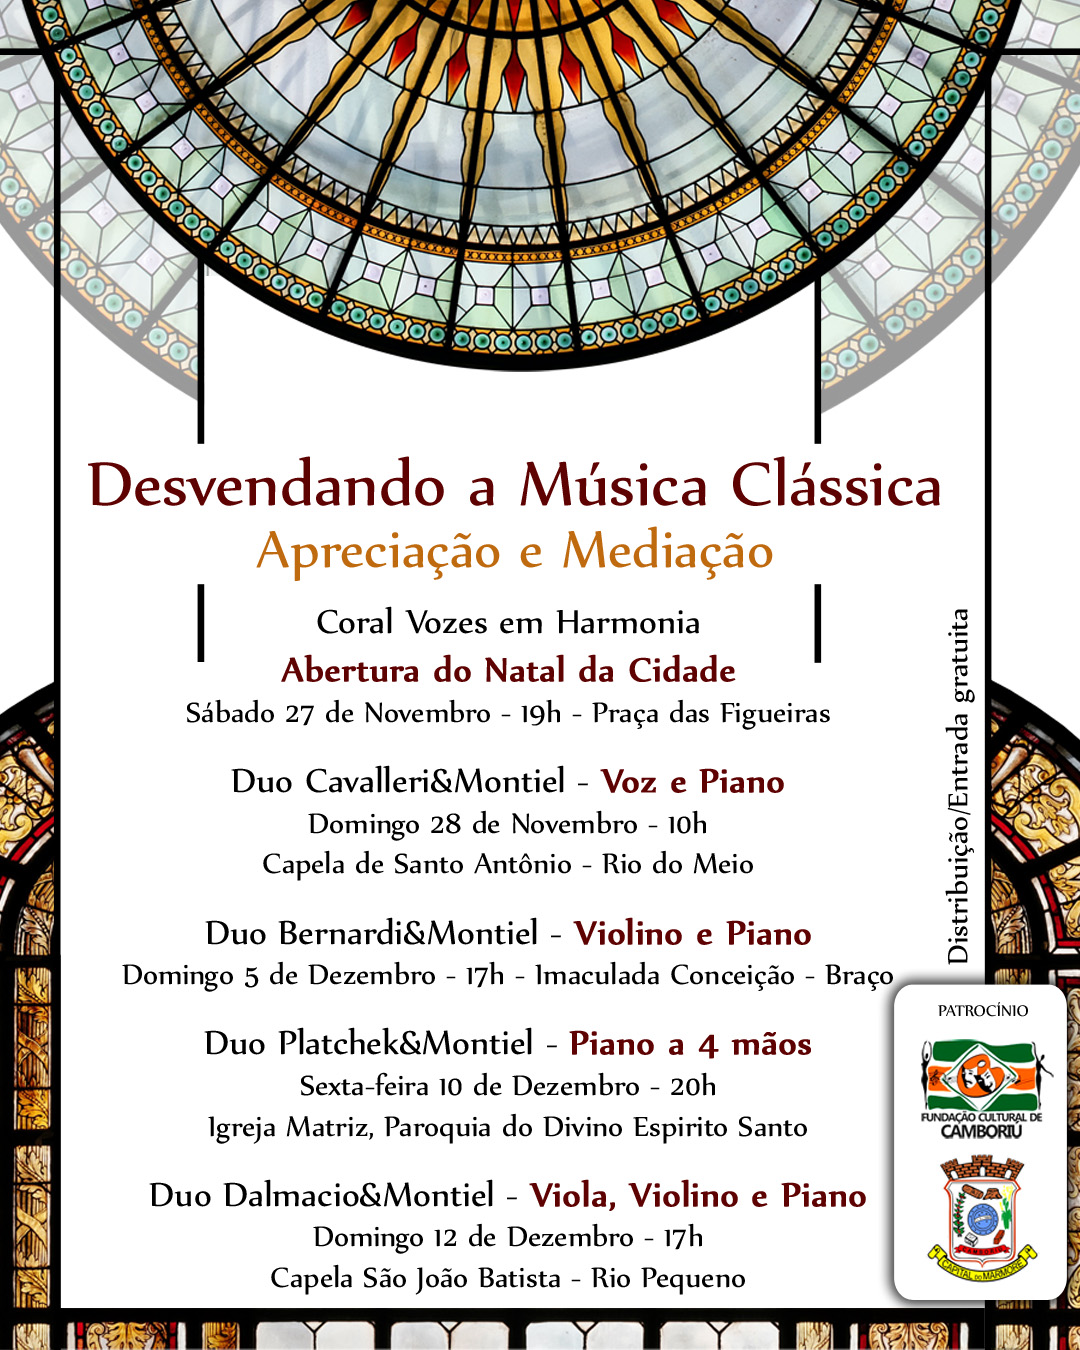 You are currently viewing Desvendando a Música Clássica – Projeto Cultural em Camboriú